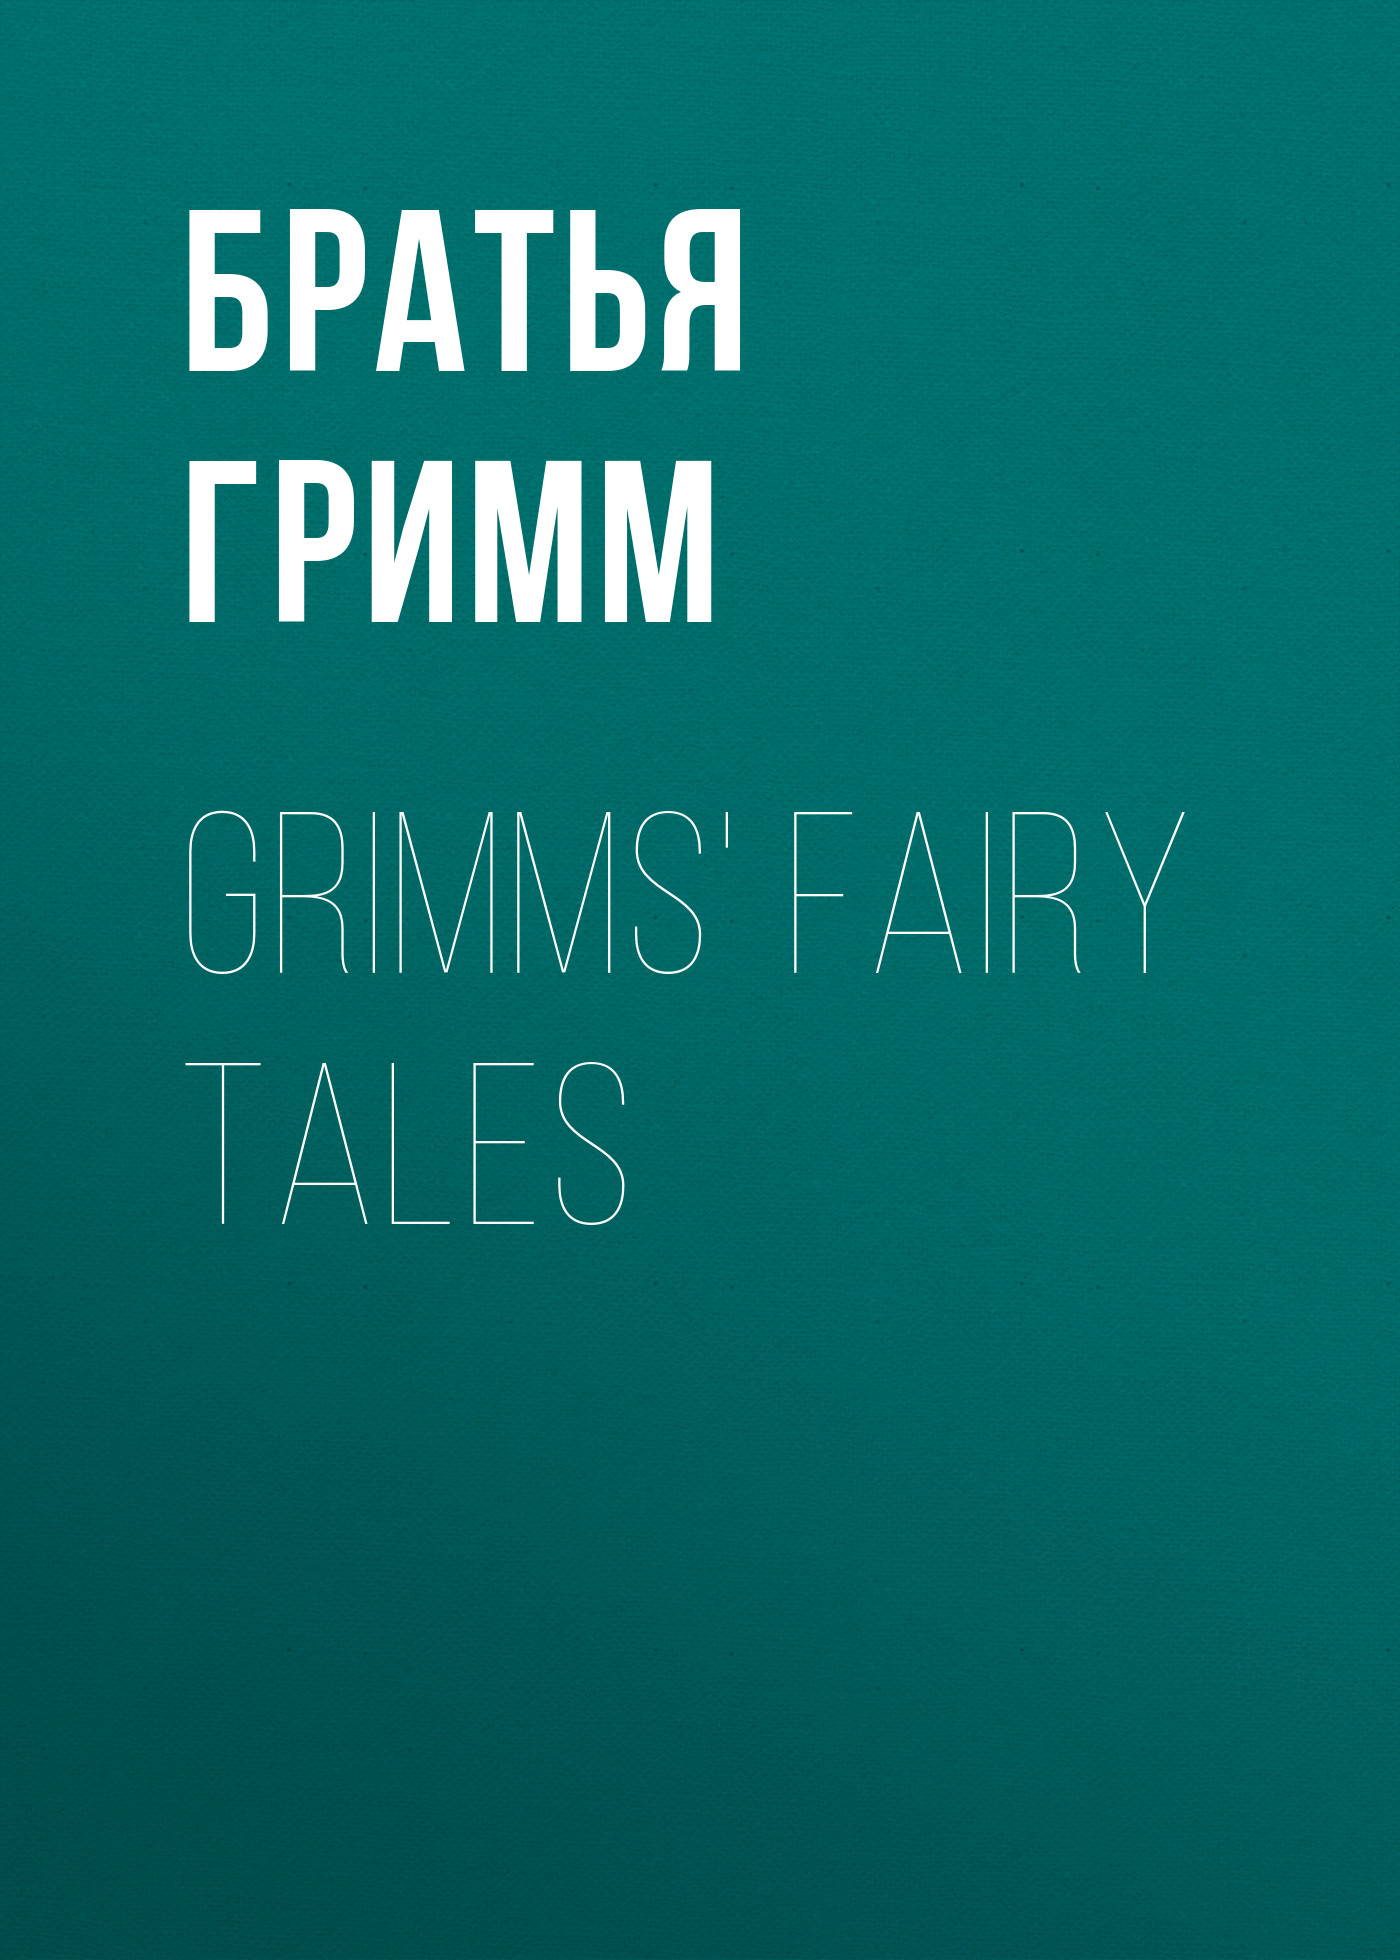 Книга Grimms' Fairy Tales из серии , созданная Якоб и Вильгельм Гримм, может относится к жанру Литература 19 века, Зарубежная старинная литература, Зарубежная классика, Сказки. Стоимость электронной книги Grimms' Fairy Tales с идентификатором 25202455 составляет 0 руб.